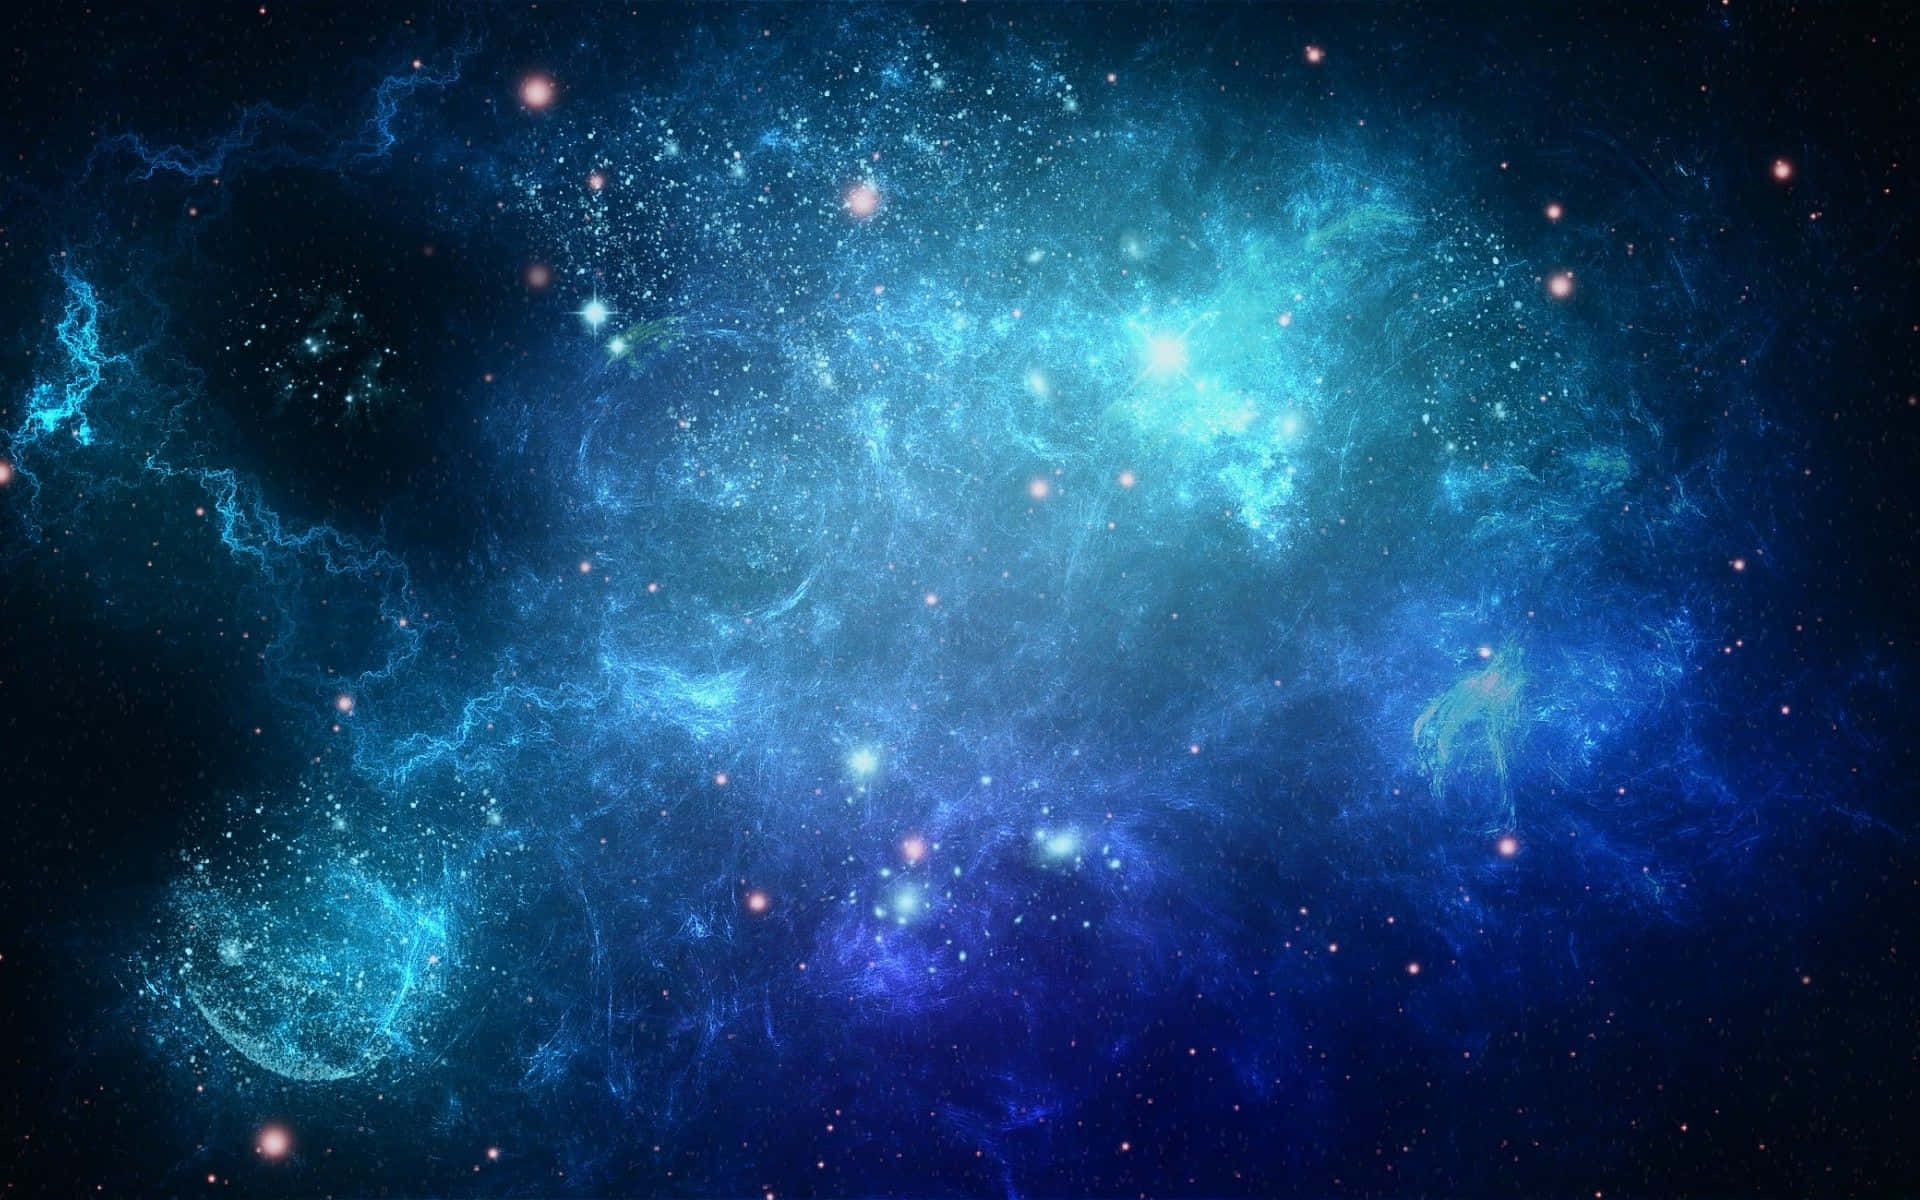 Coloriradiosi Fuori Da Questo Mondo - Una Grandiosa Galassia Blu Irradia In Un Cielo Notturno Scuro. Sfondo